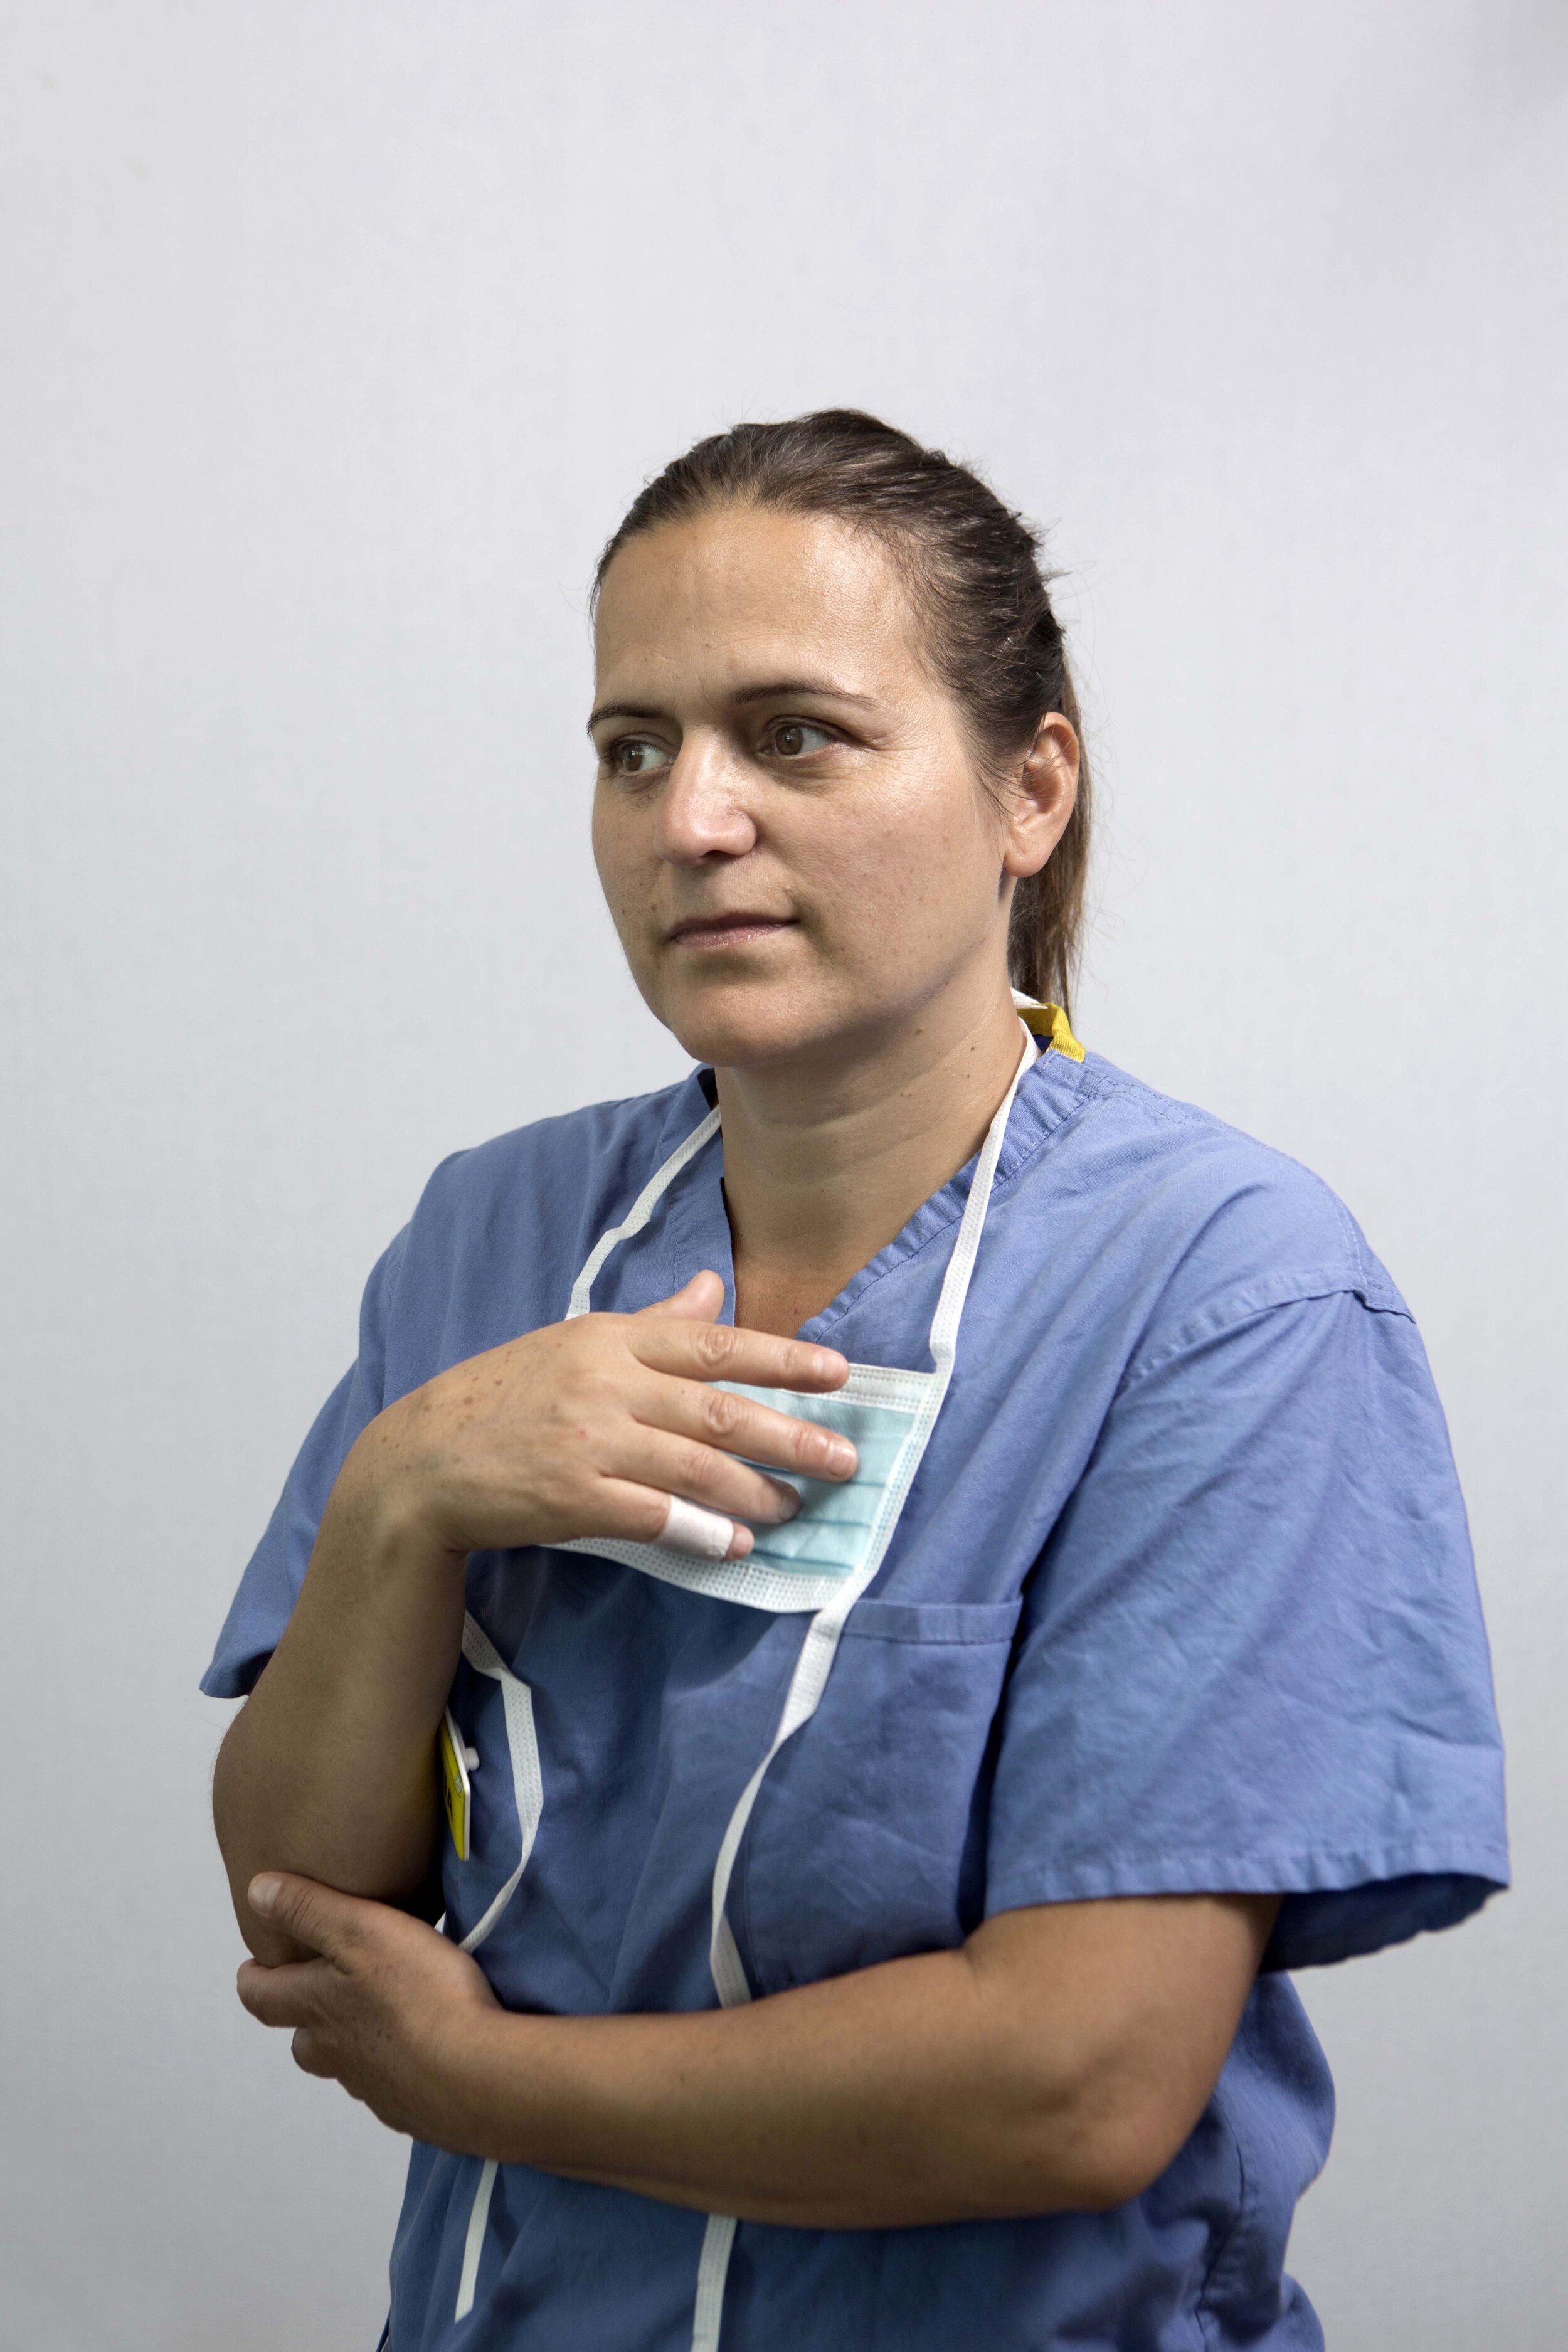 Maria Helena Rodrigues, nursing assistant